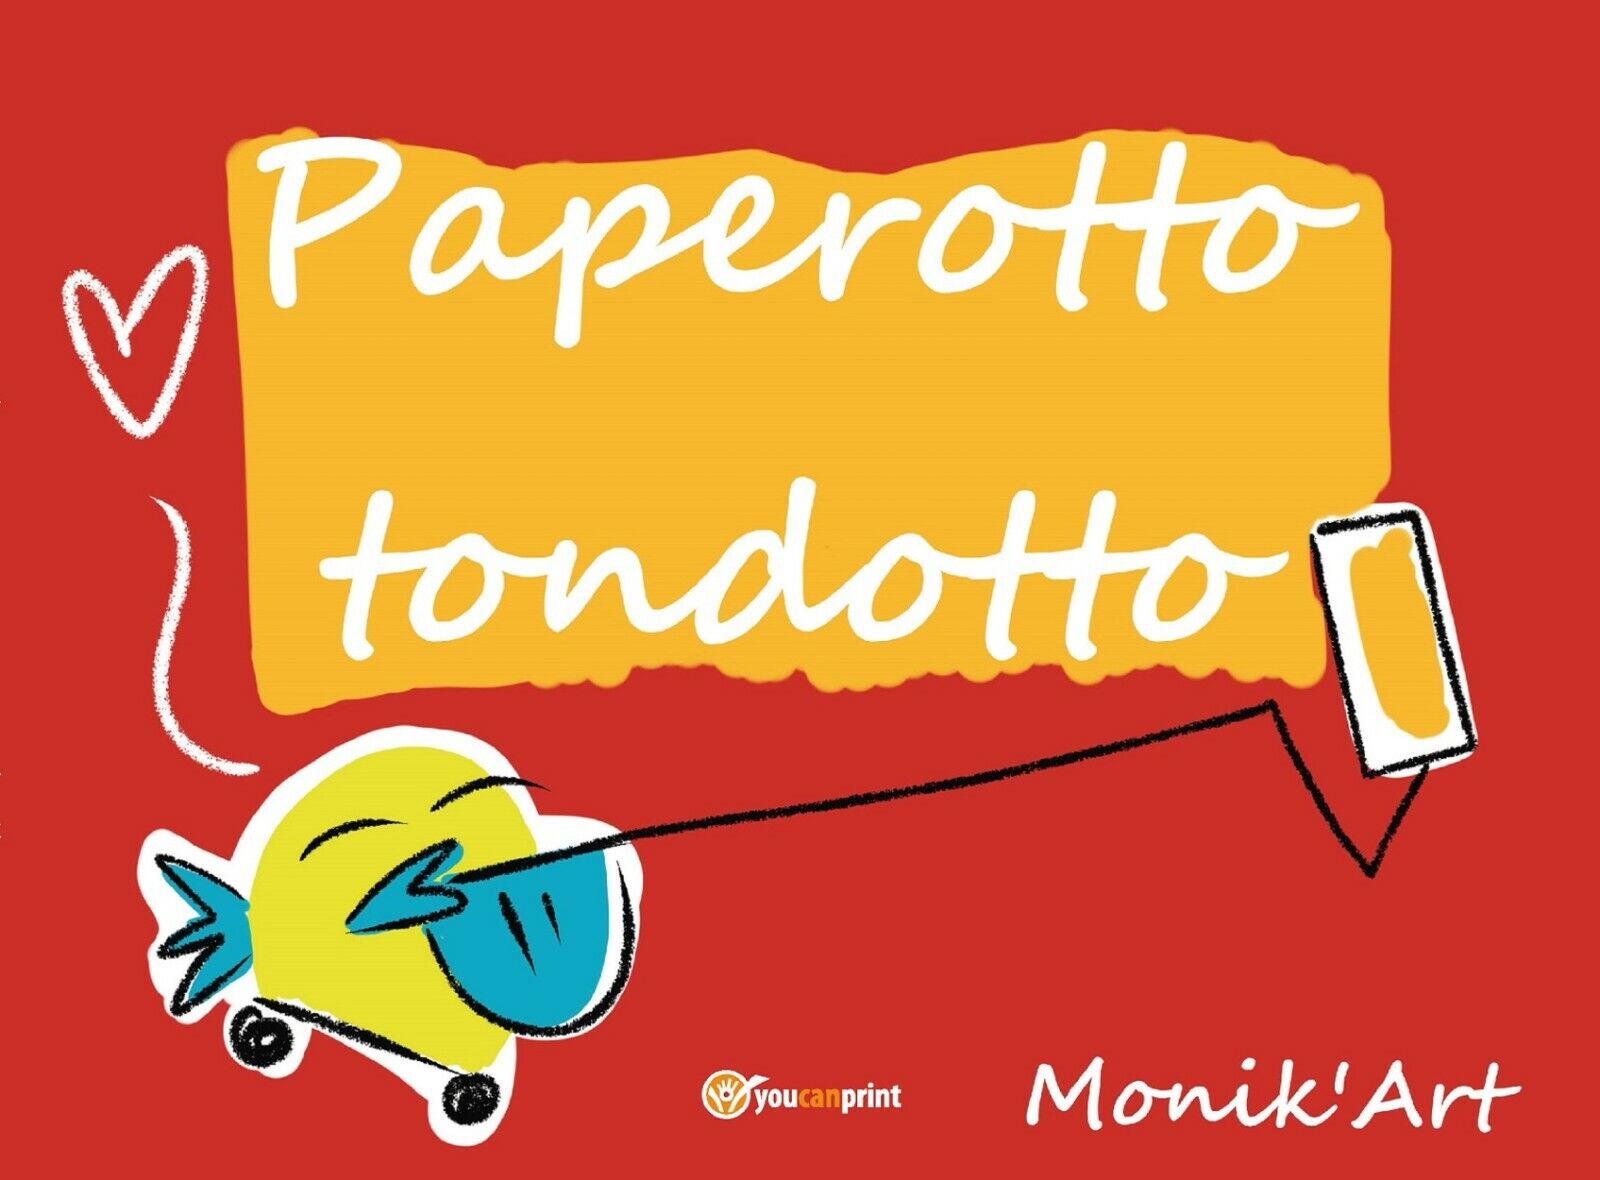  Paperotto tondotto - Monica Ciabattini,  2019,  Youcanprint